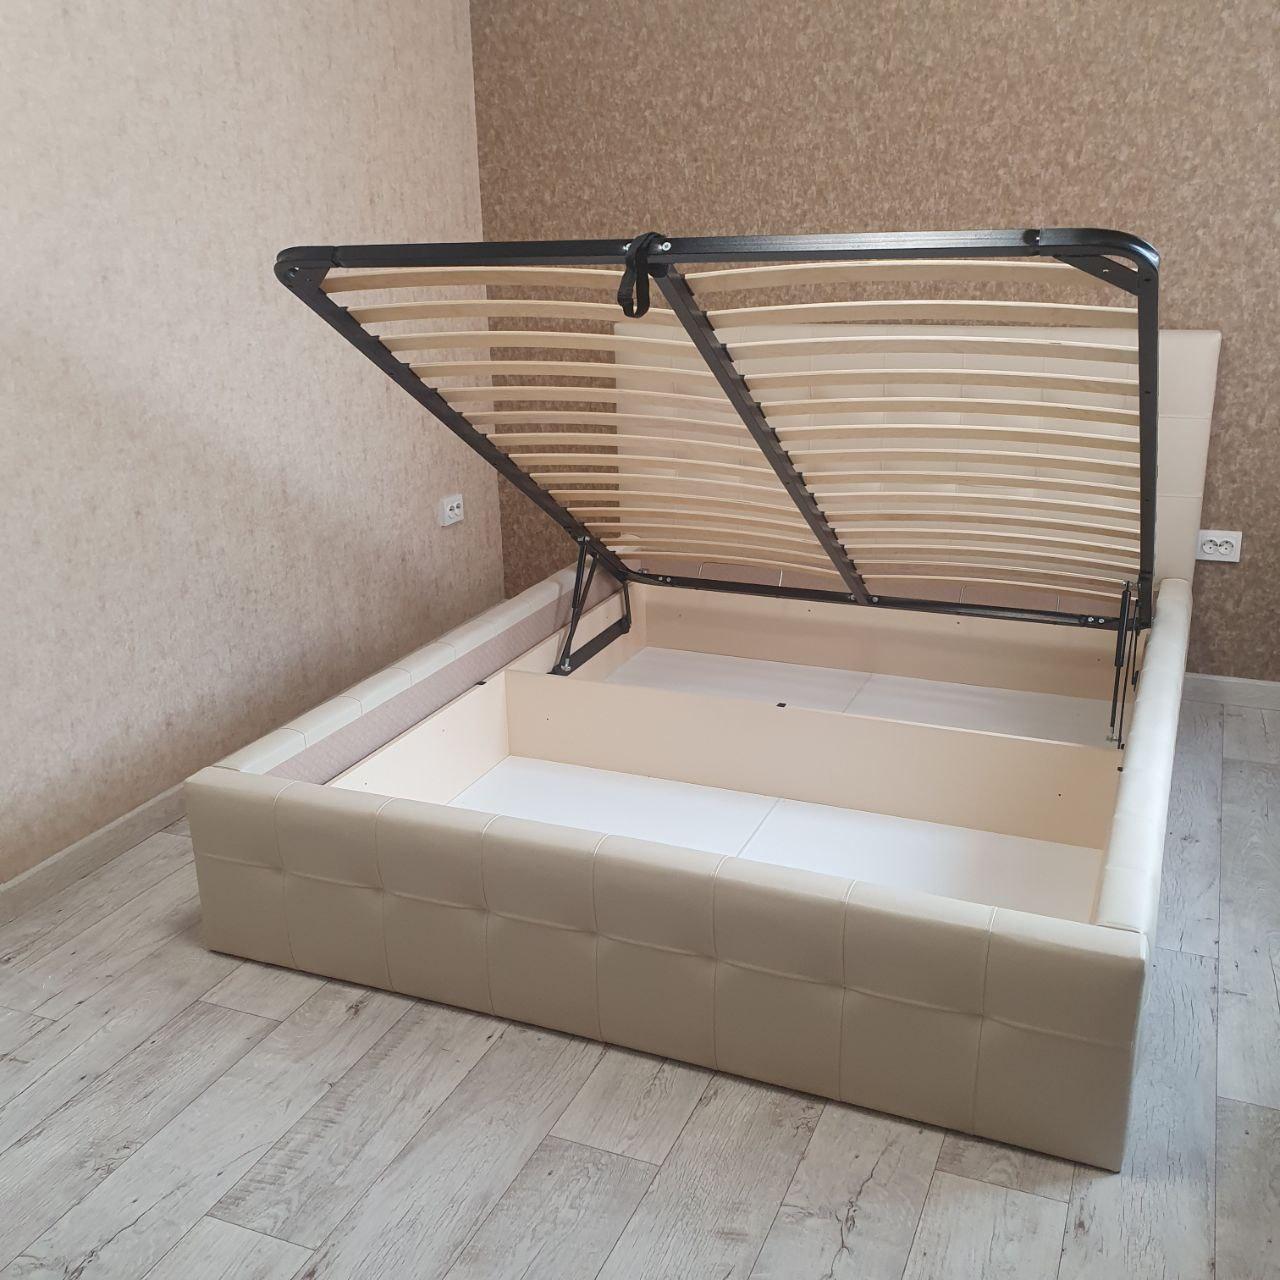 Двуспальная кровать "Bella-Кристалл" 180 х 200 с подъемным механизмом цвет Sancho 2203